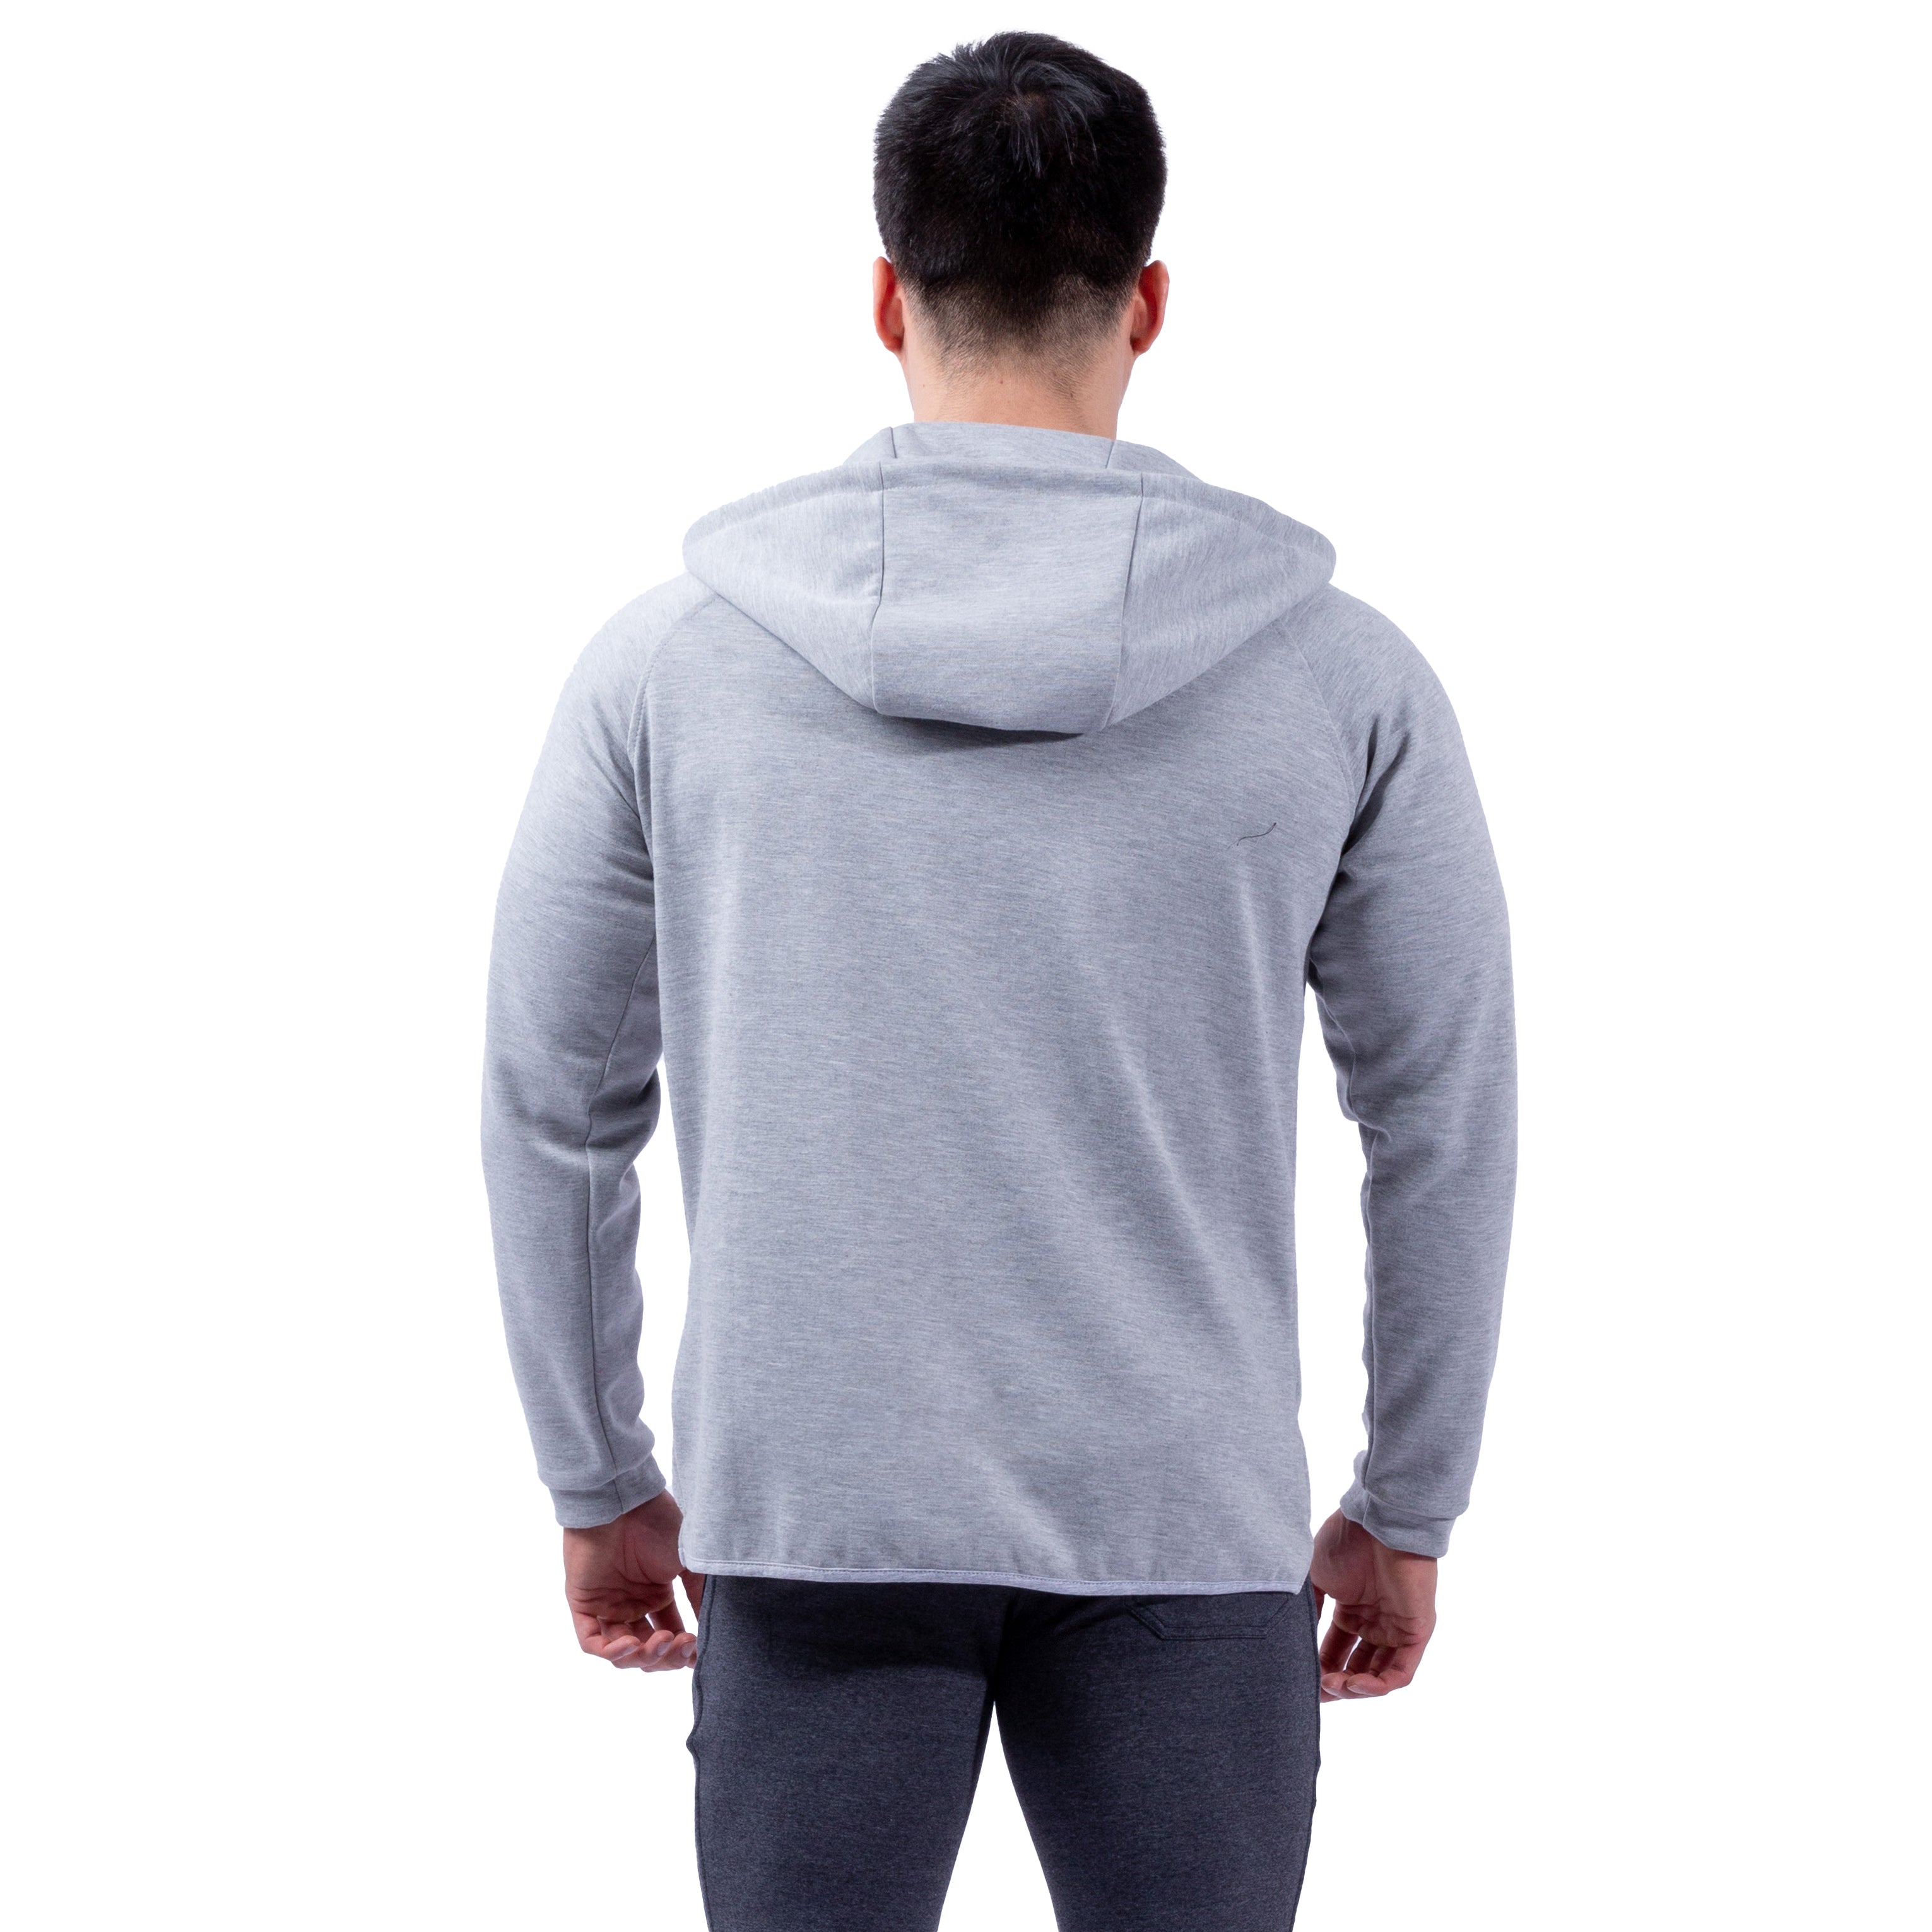 Musculo essential sport hoodie